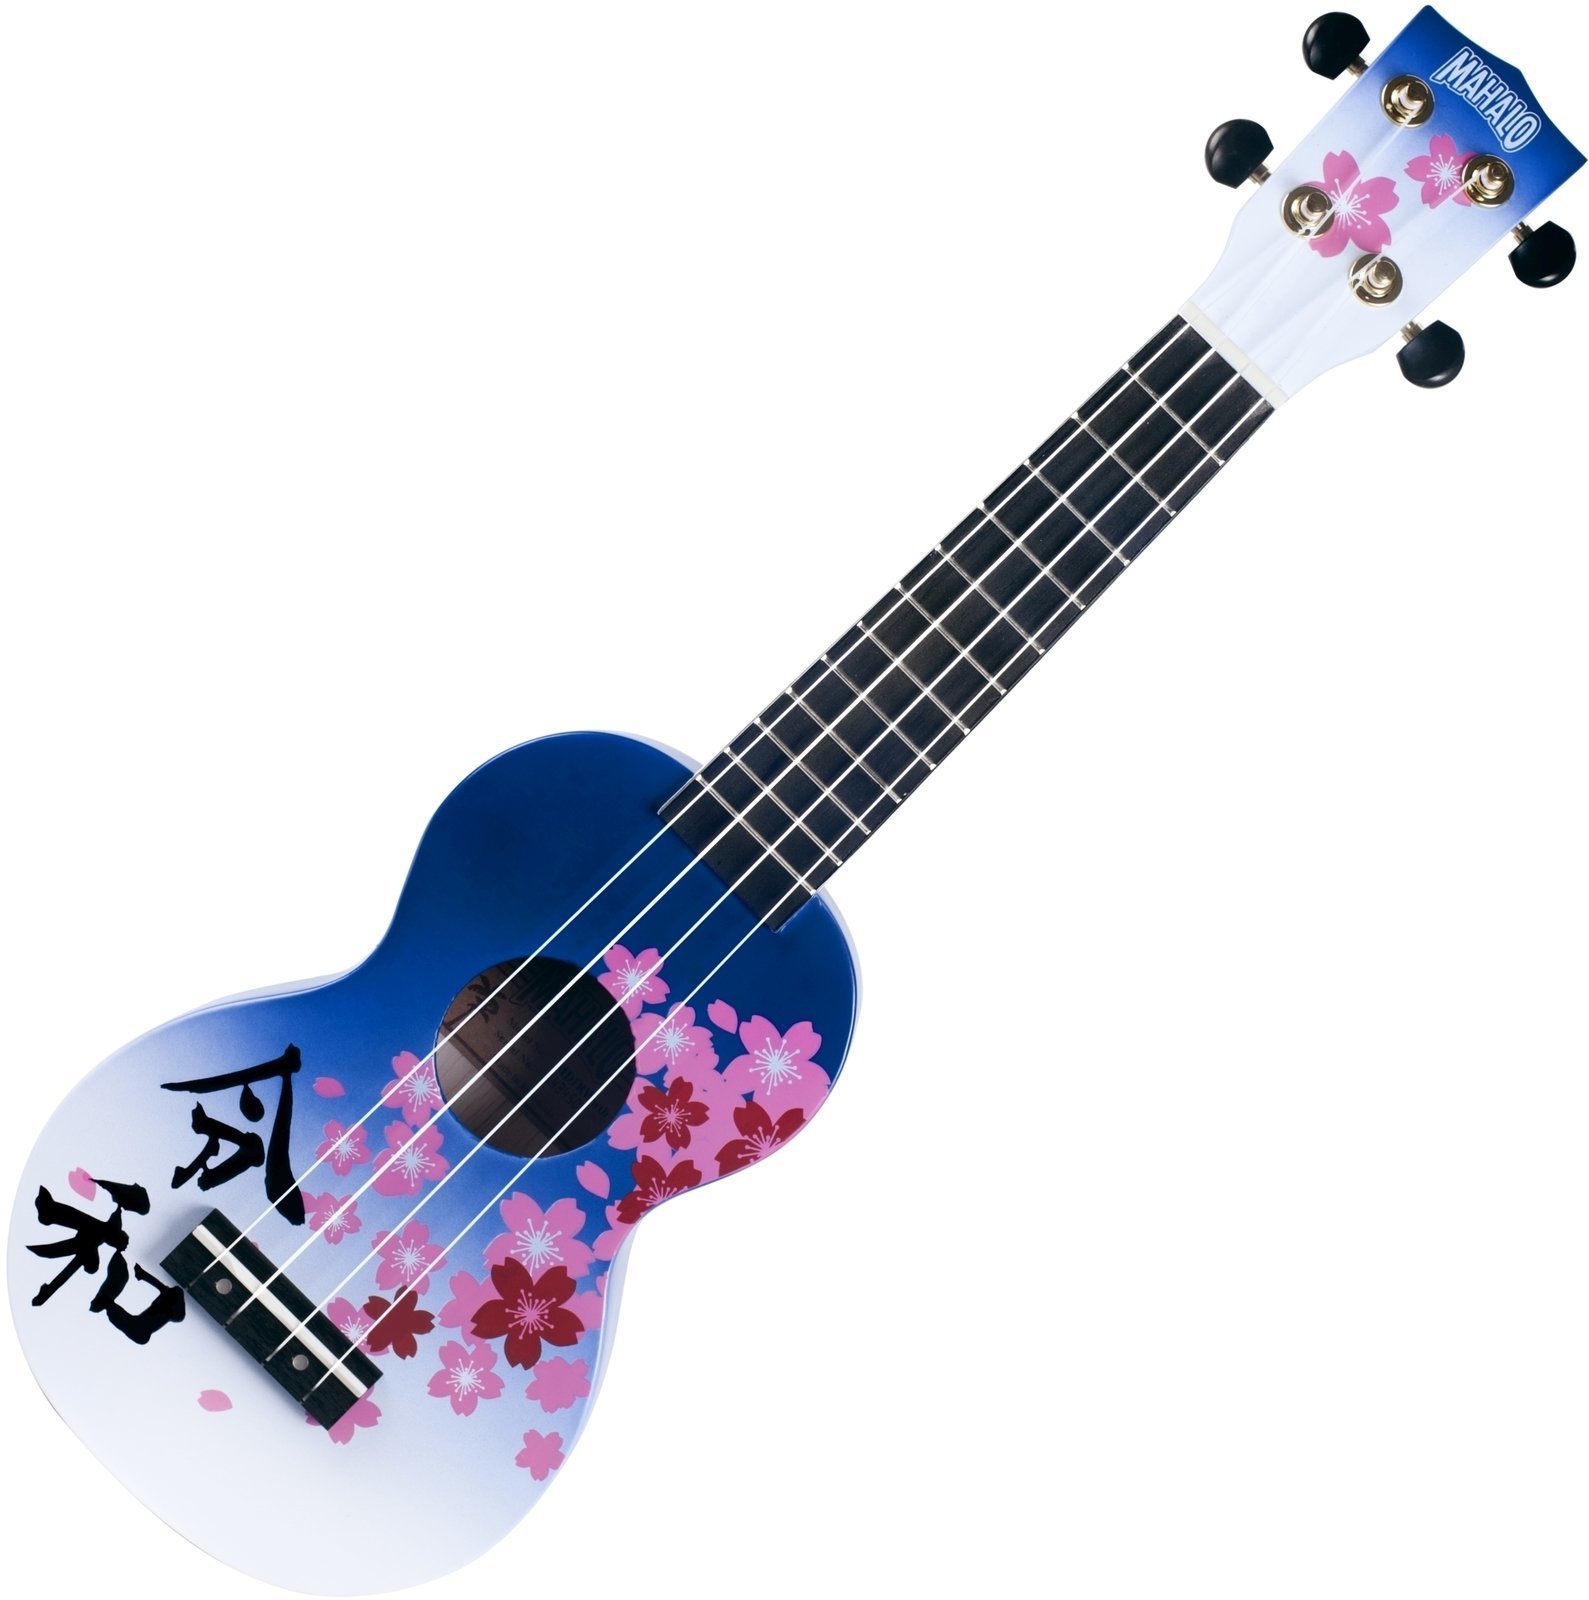 Soprano ukulele Mahalo MD1RWWTB Soprano ukulele Reiwa Blue Burst